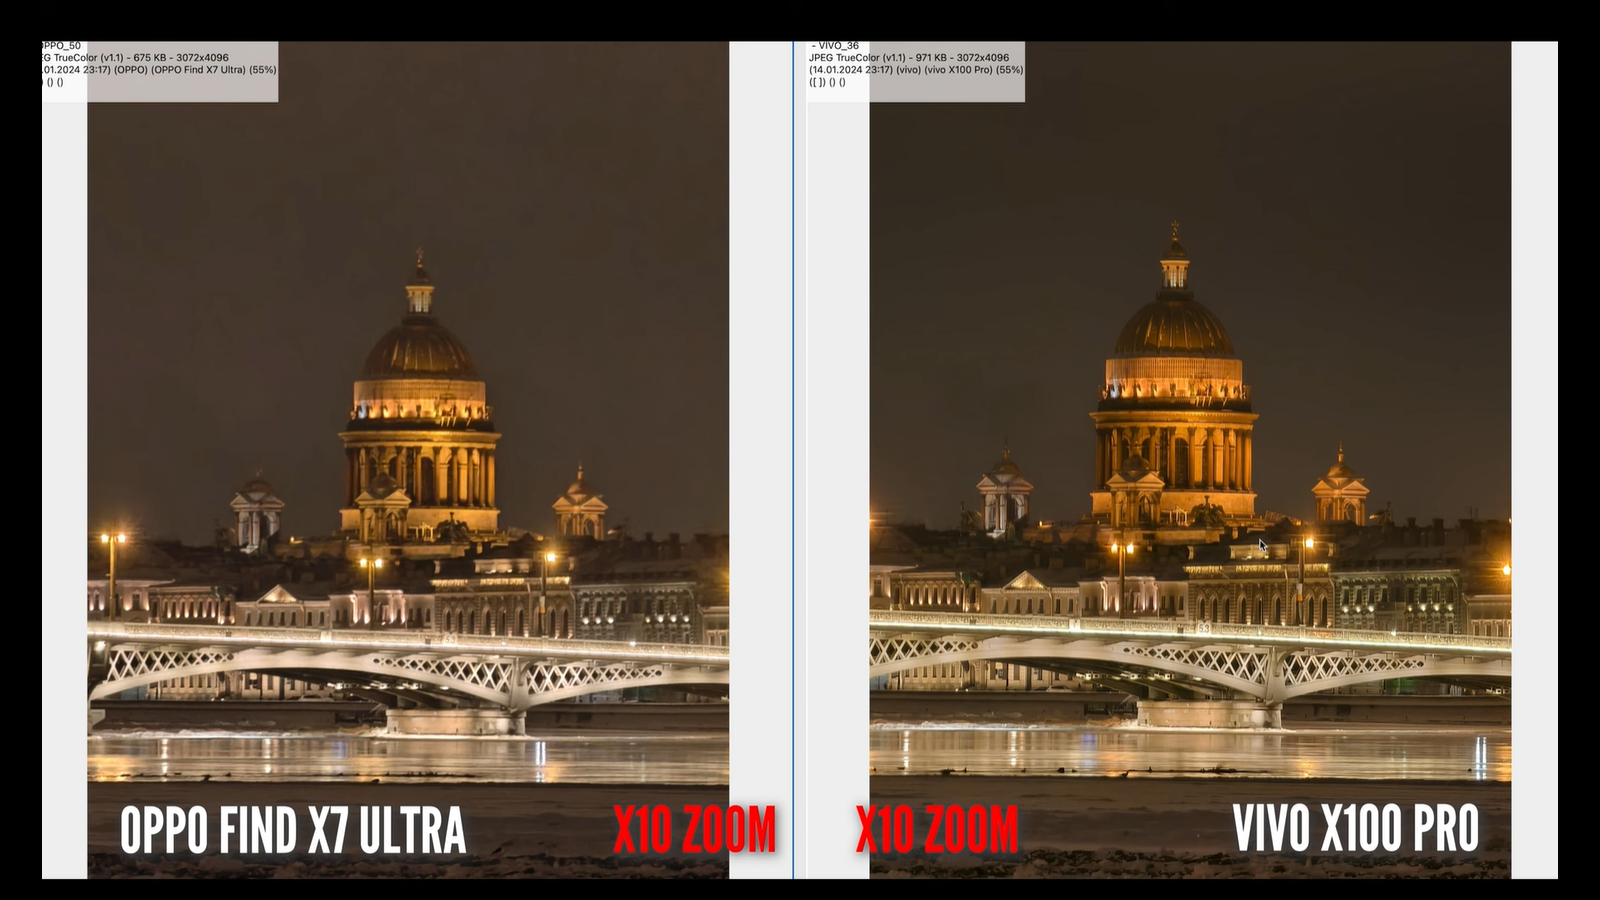 Китайские смартфоны с лучшими камерами - Vivo X100 Pro и Oppo Find X7 Ultra - сравнили20